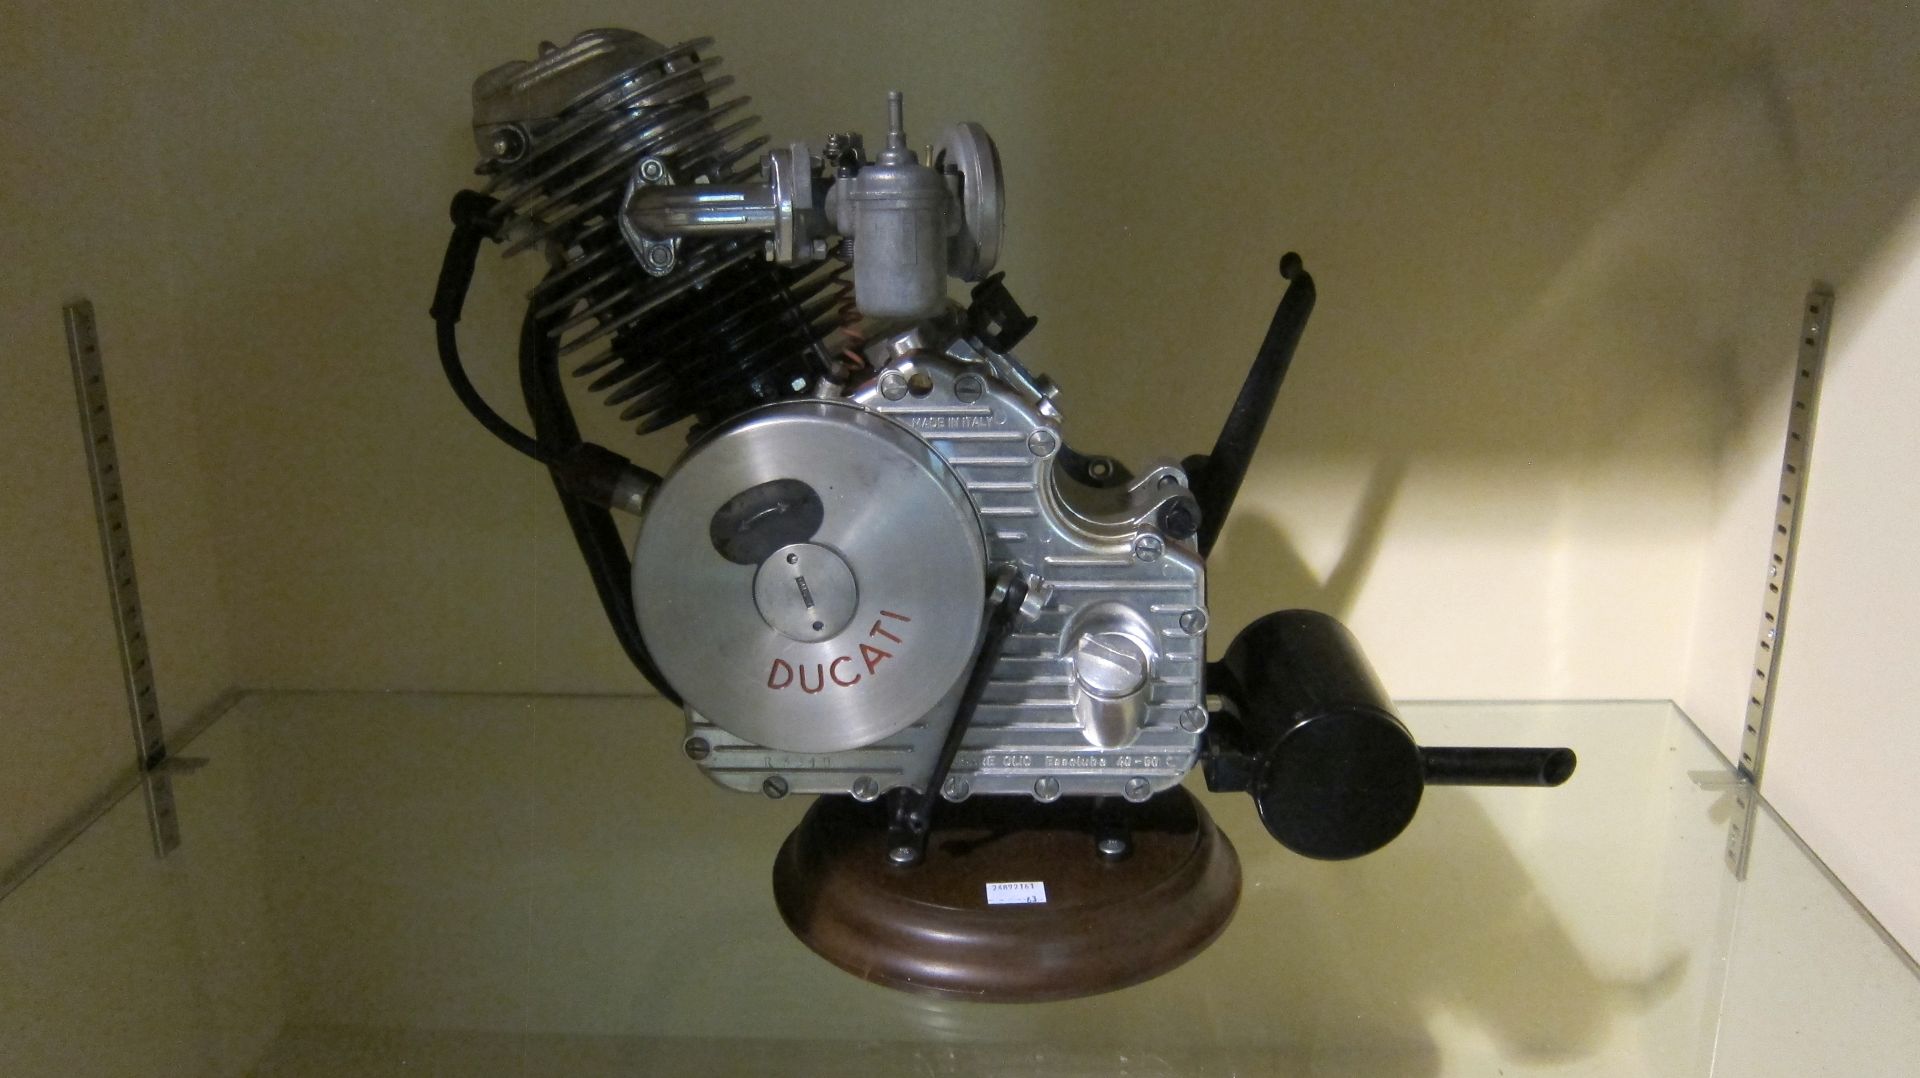 A Ducati Cucciolo clip-on engine